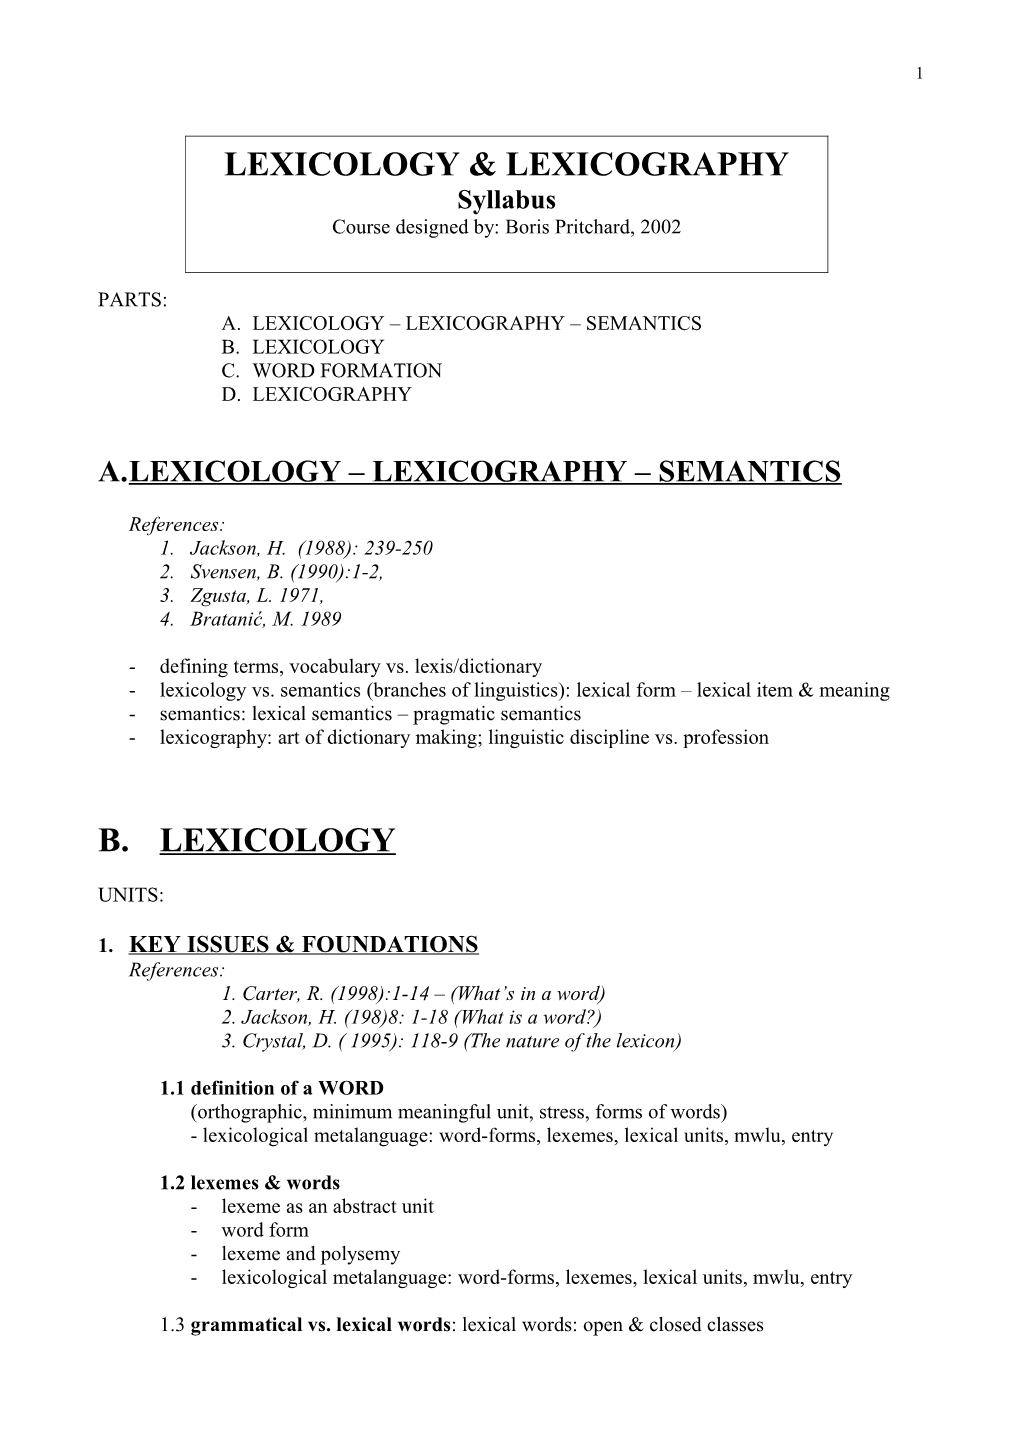 A. Lexicology Lexicography Semantics